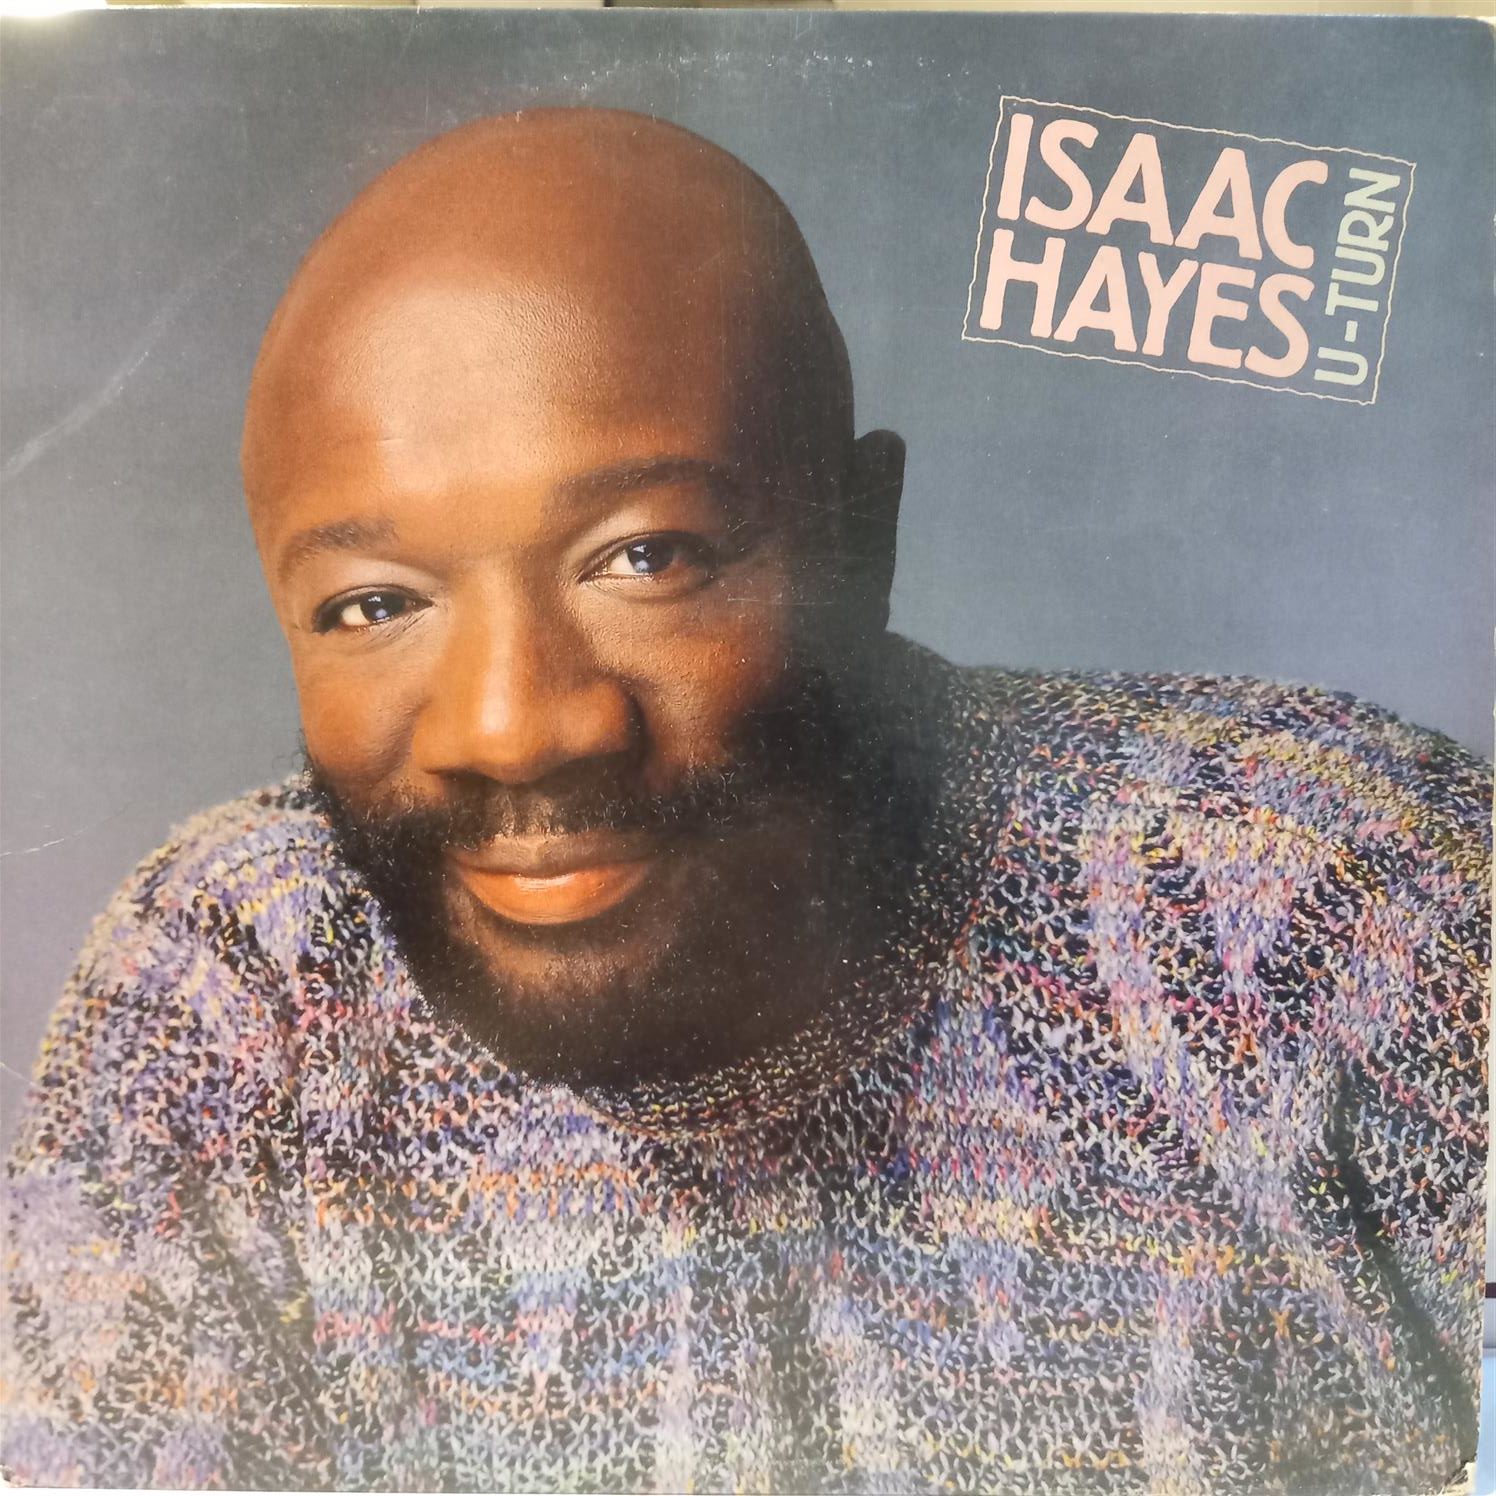 ISAAC HAYES – U TURN ON